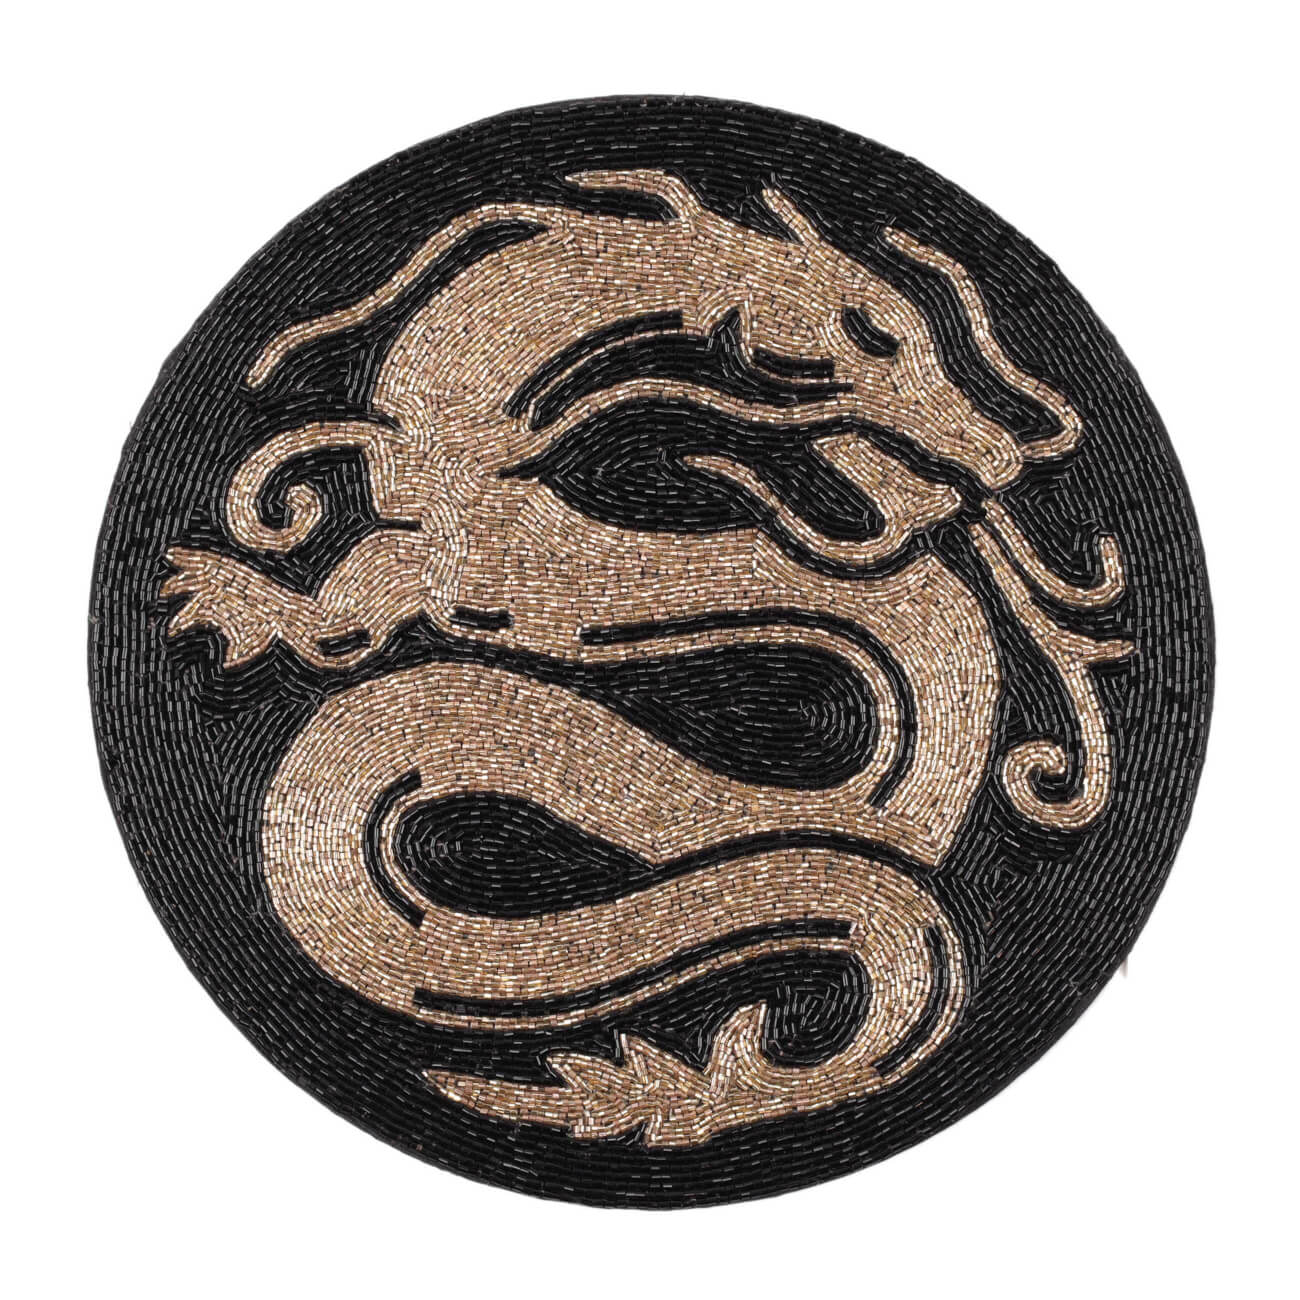 Салфетка под приборы, 36 см, бисер, круглая, золотисто-черная, Дракон, Art beads изображение № 1